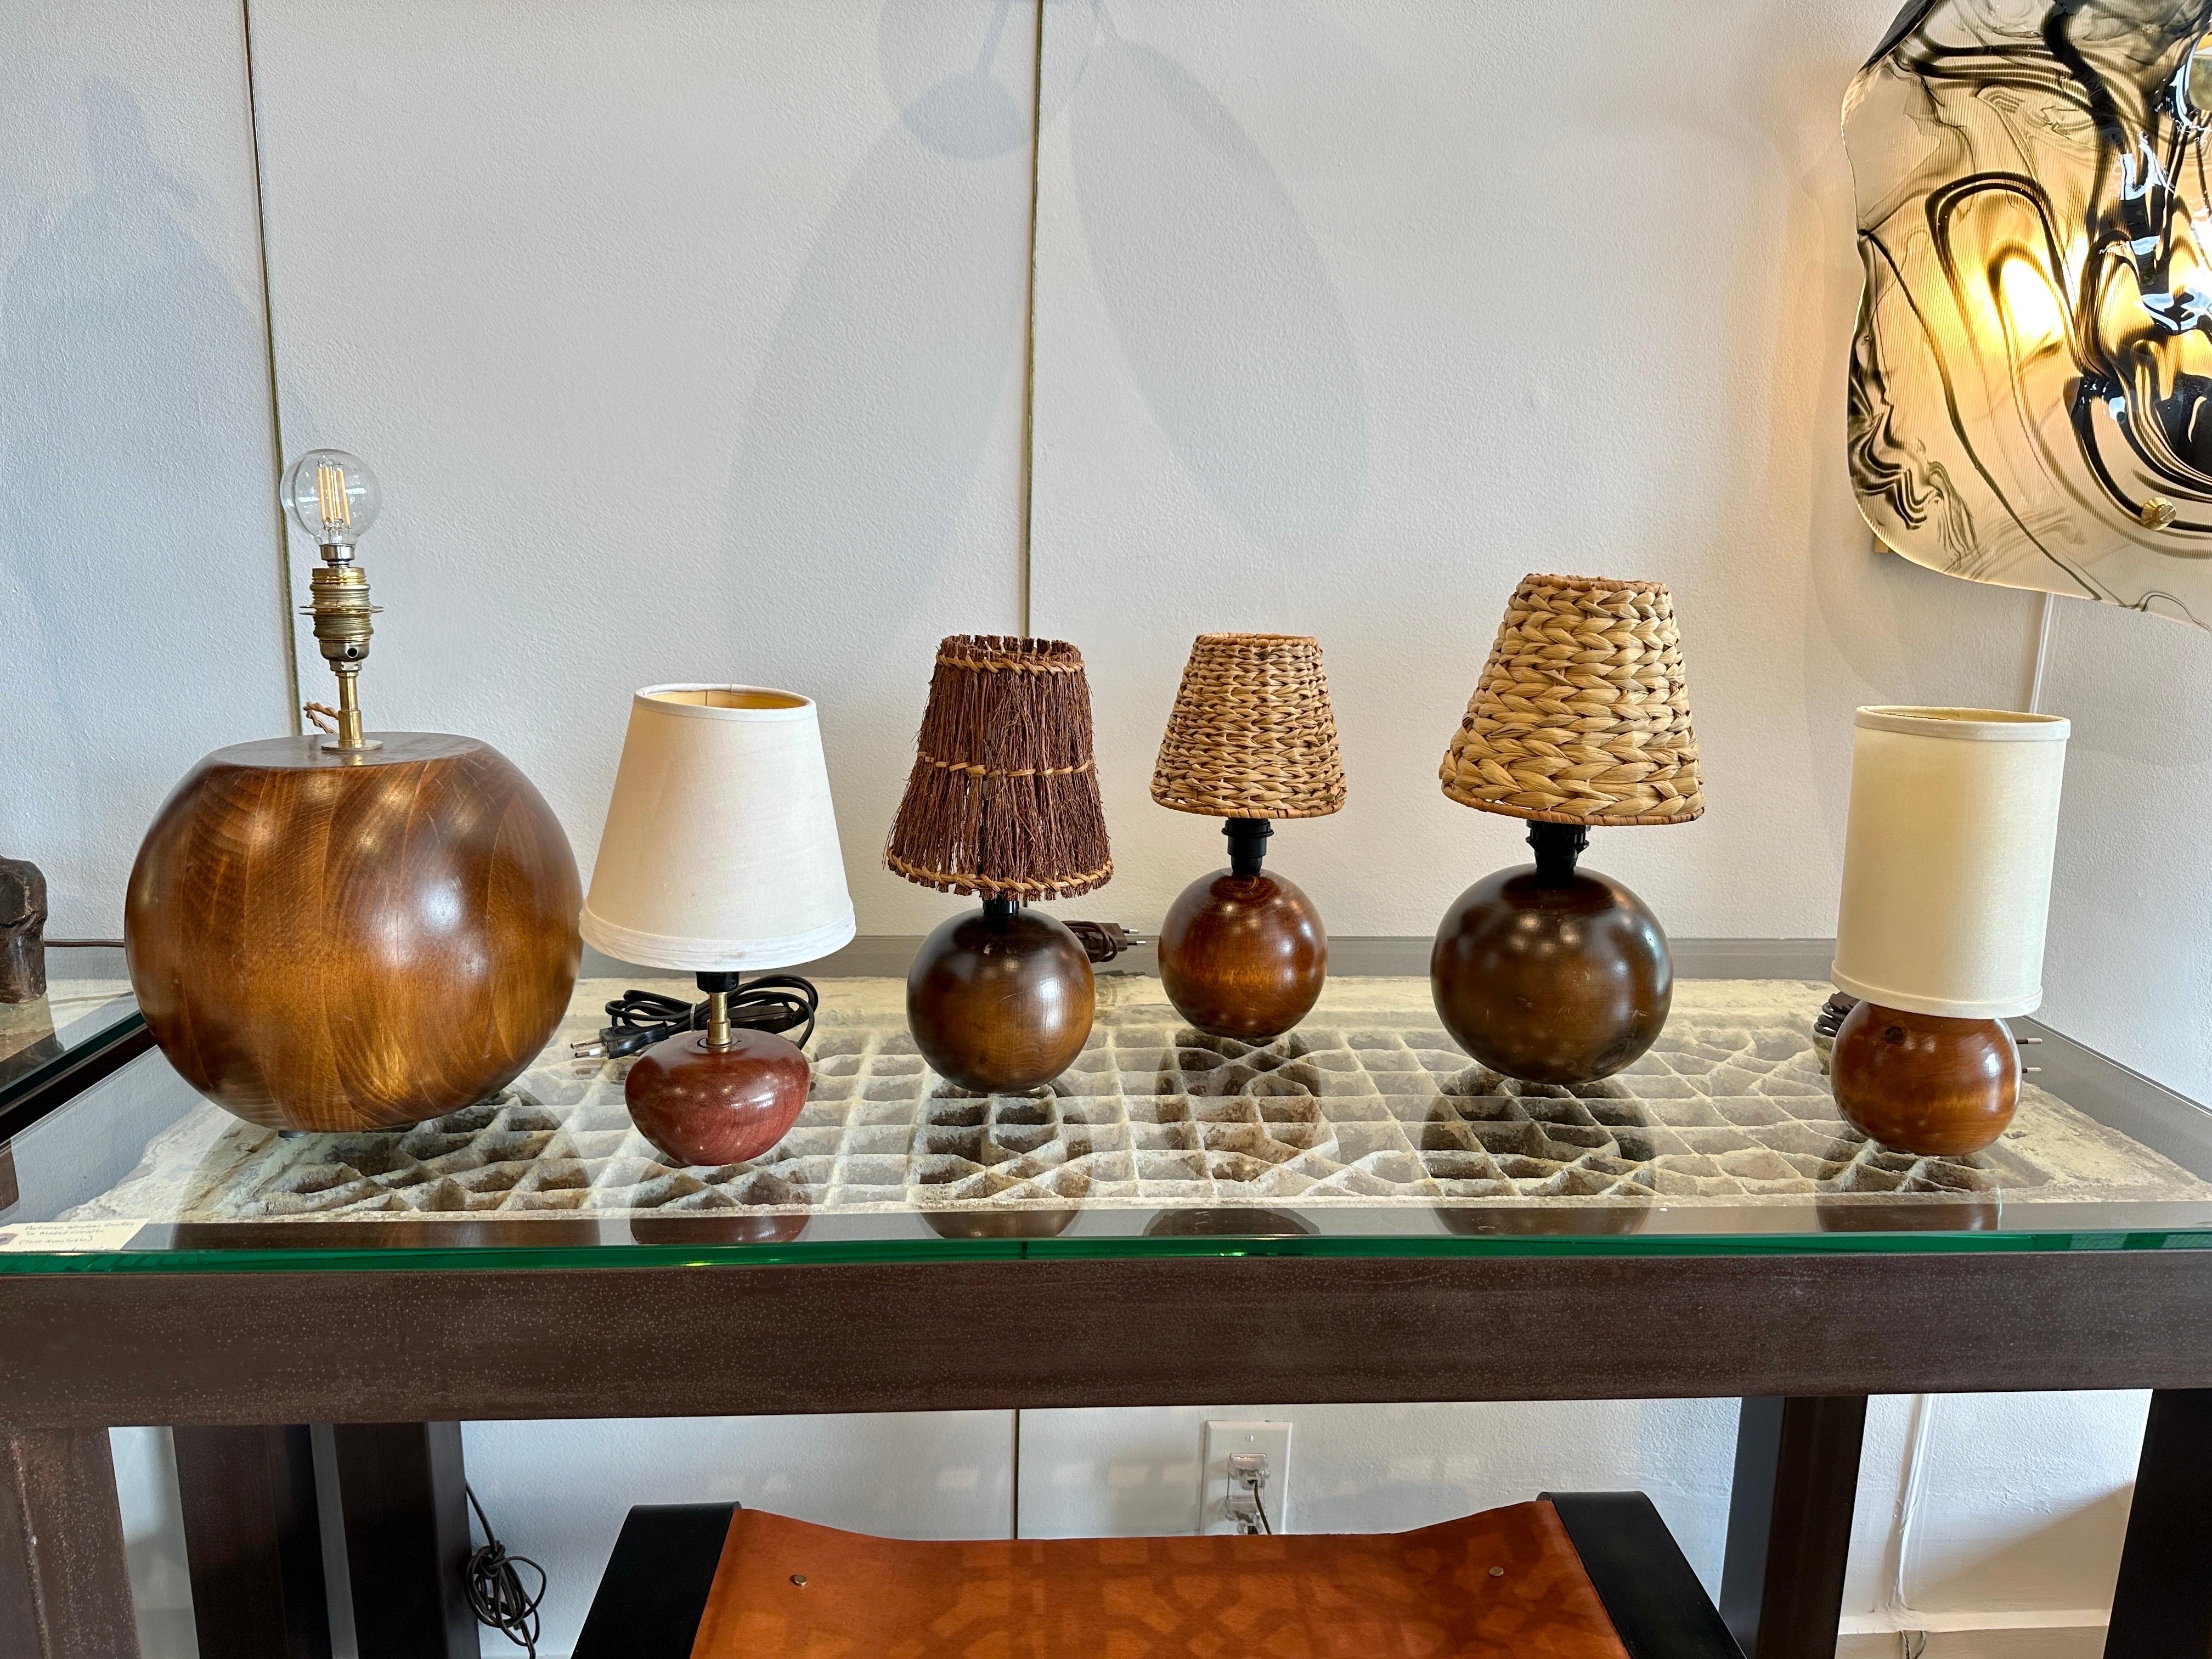 Cette lampe en teck en forme de globe est composée de tranches de bois formées par des artisans scandinaves pour créer cette lampe étonnamment organique. Le câblage a été refait à neuf avec des câbles en soie. NOTE : il y a un groupe étonnant de ces